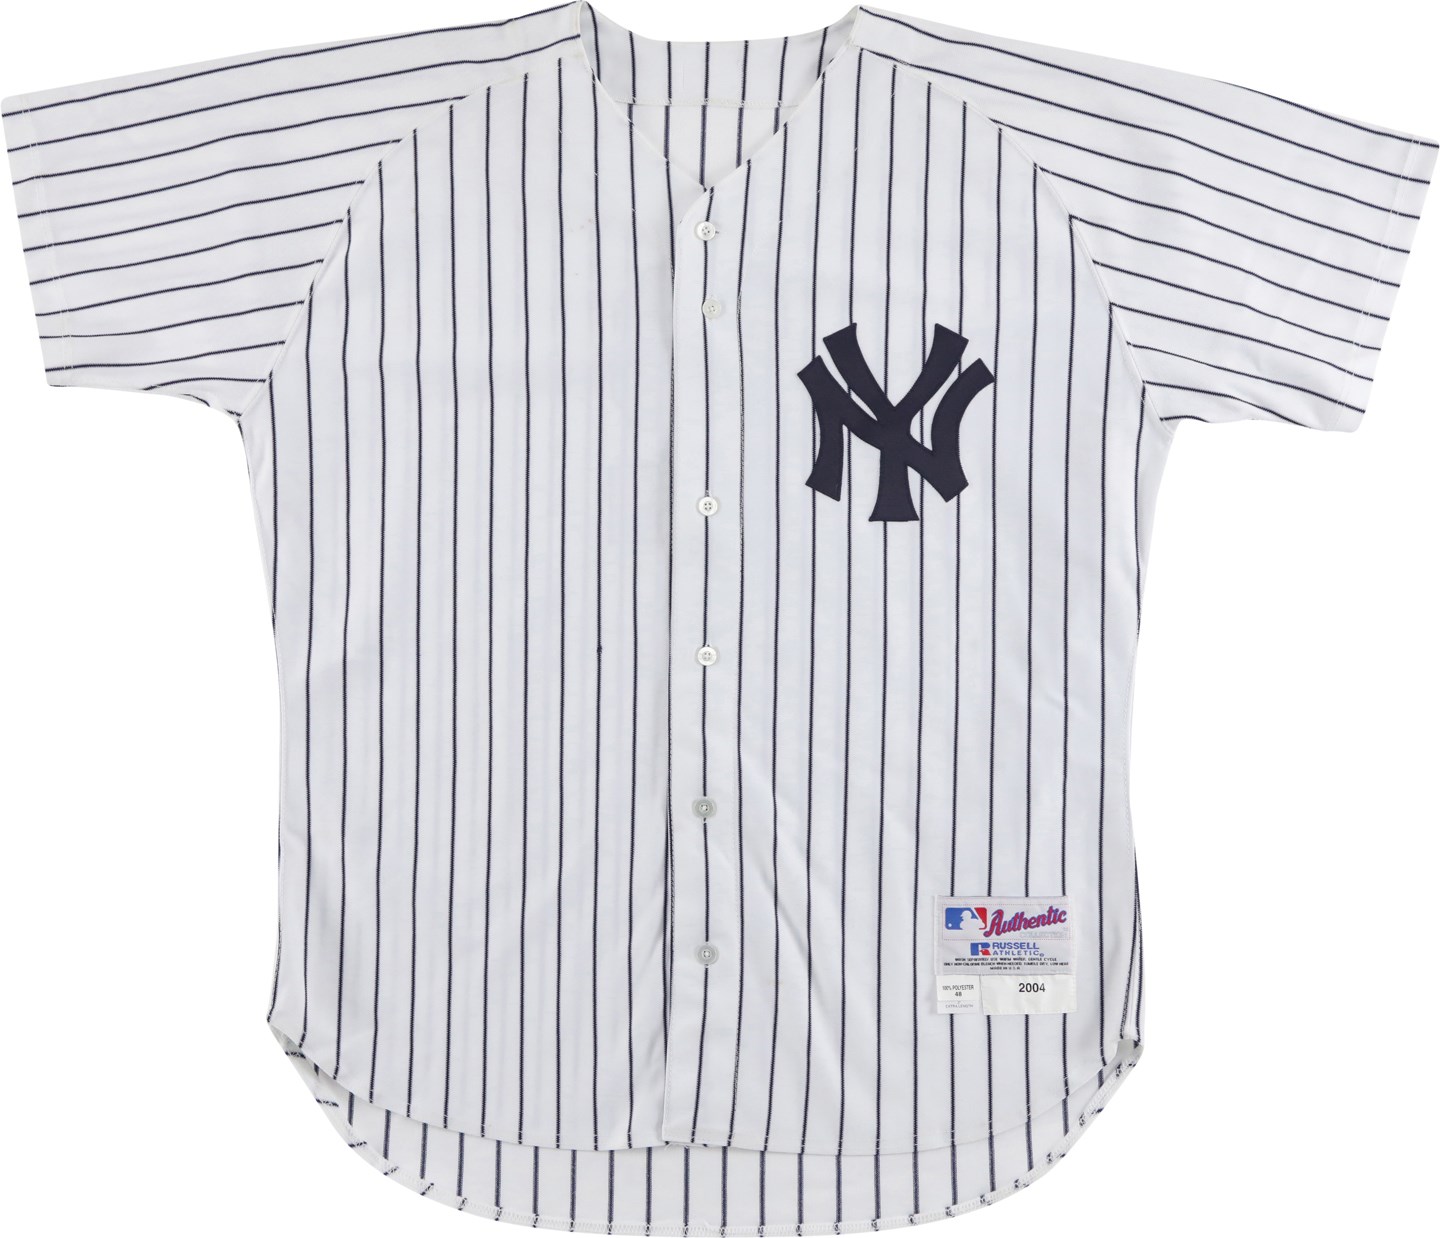 Baseball Equipment - 2004 Derek Jeter New York Yankees Game Issued Jersey